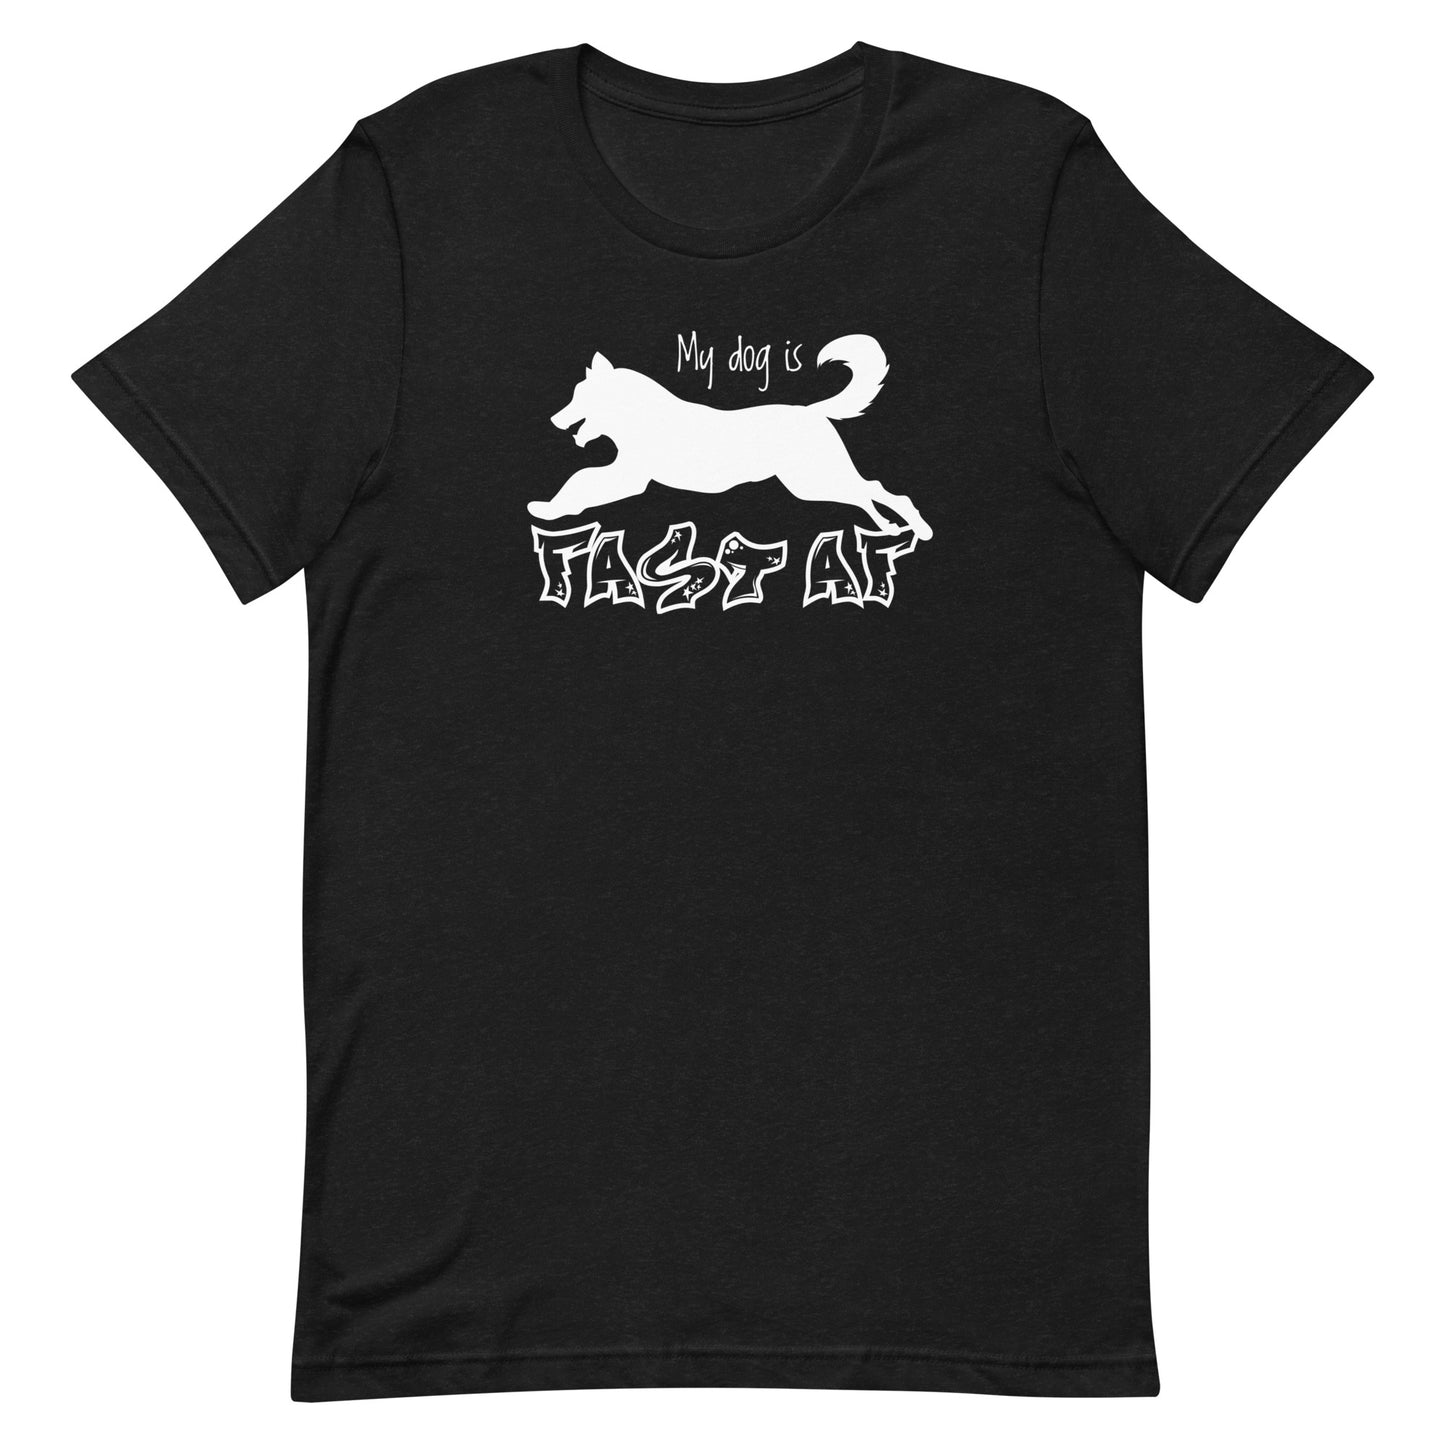 FAST AF - HUSKY - Unisex t-shirt